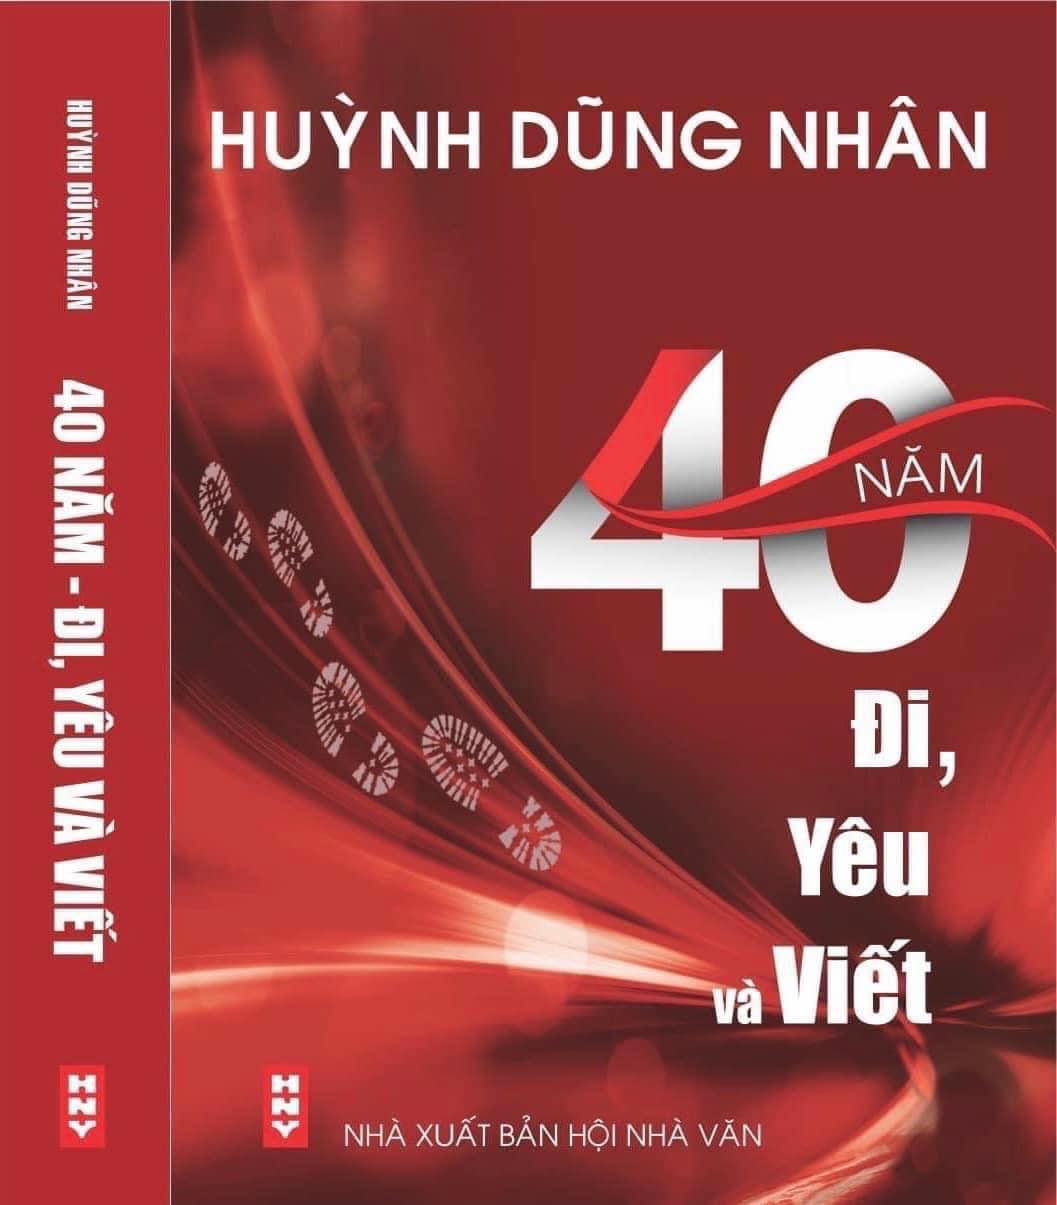 Nhà báo Huỳnh Dũng Nhân ra mắt cuốn hồi ký &quot;40 năm: Đi, yêu và viết&quot; - Ảnh 2.